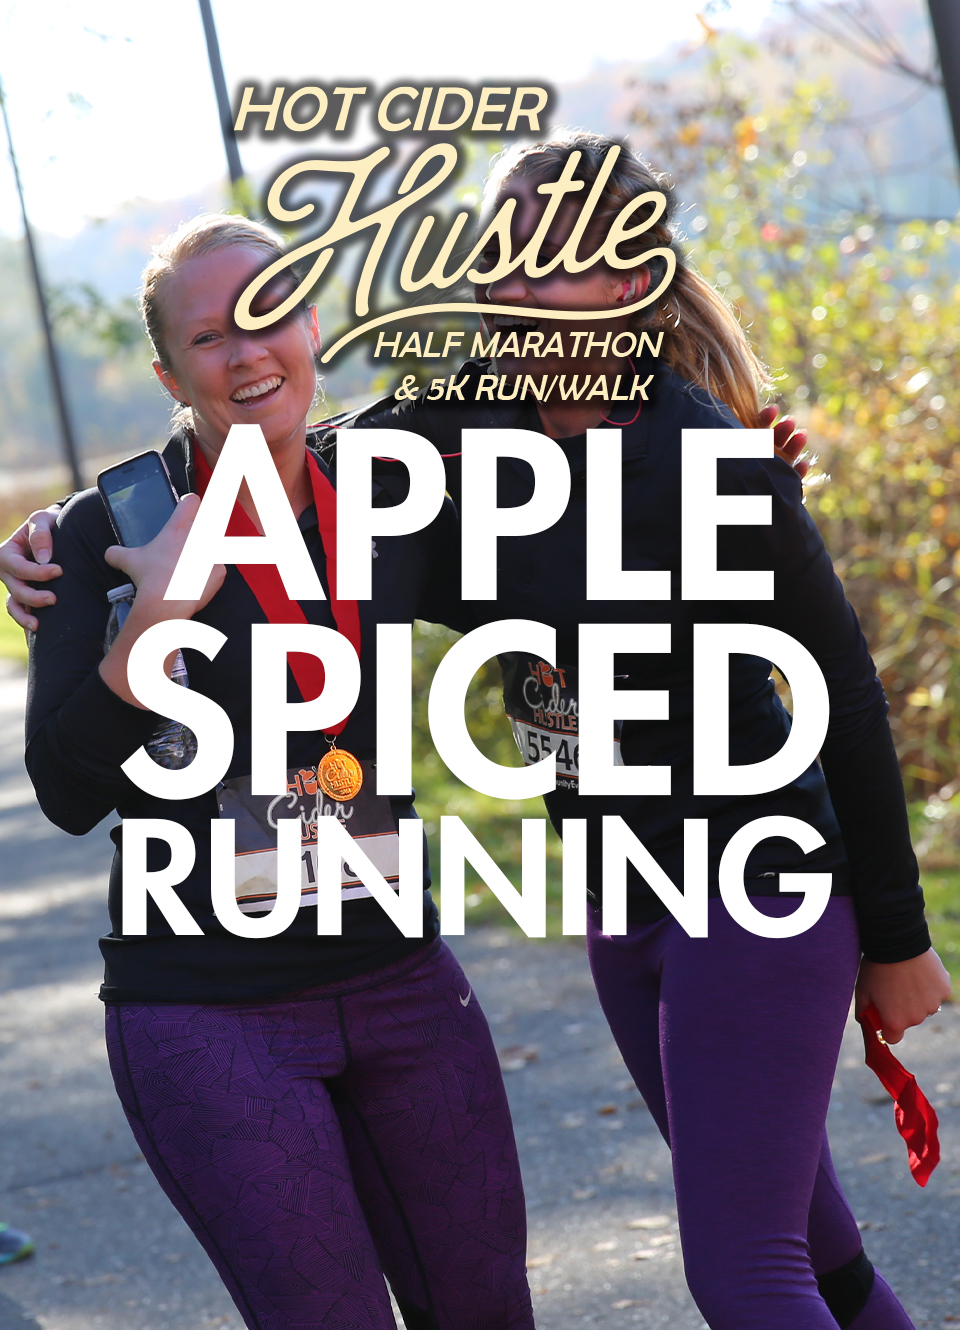 Rochester Hot Cider Hustle Half Marathon & 5K